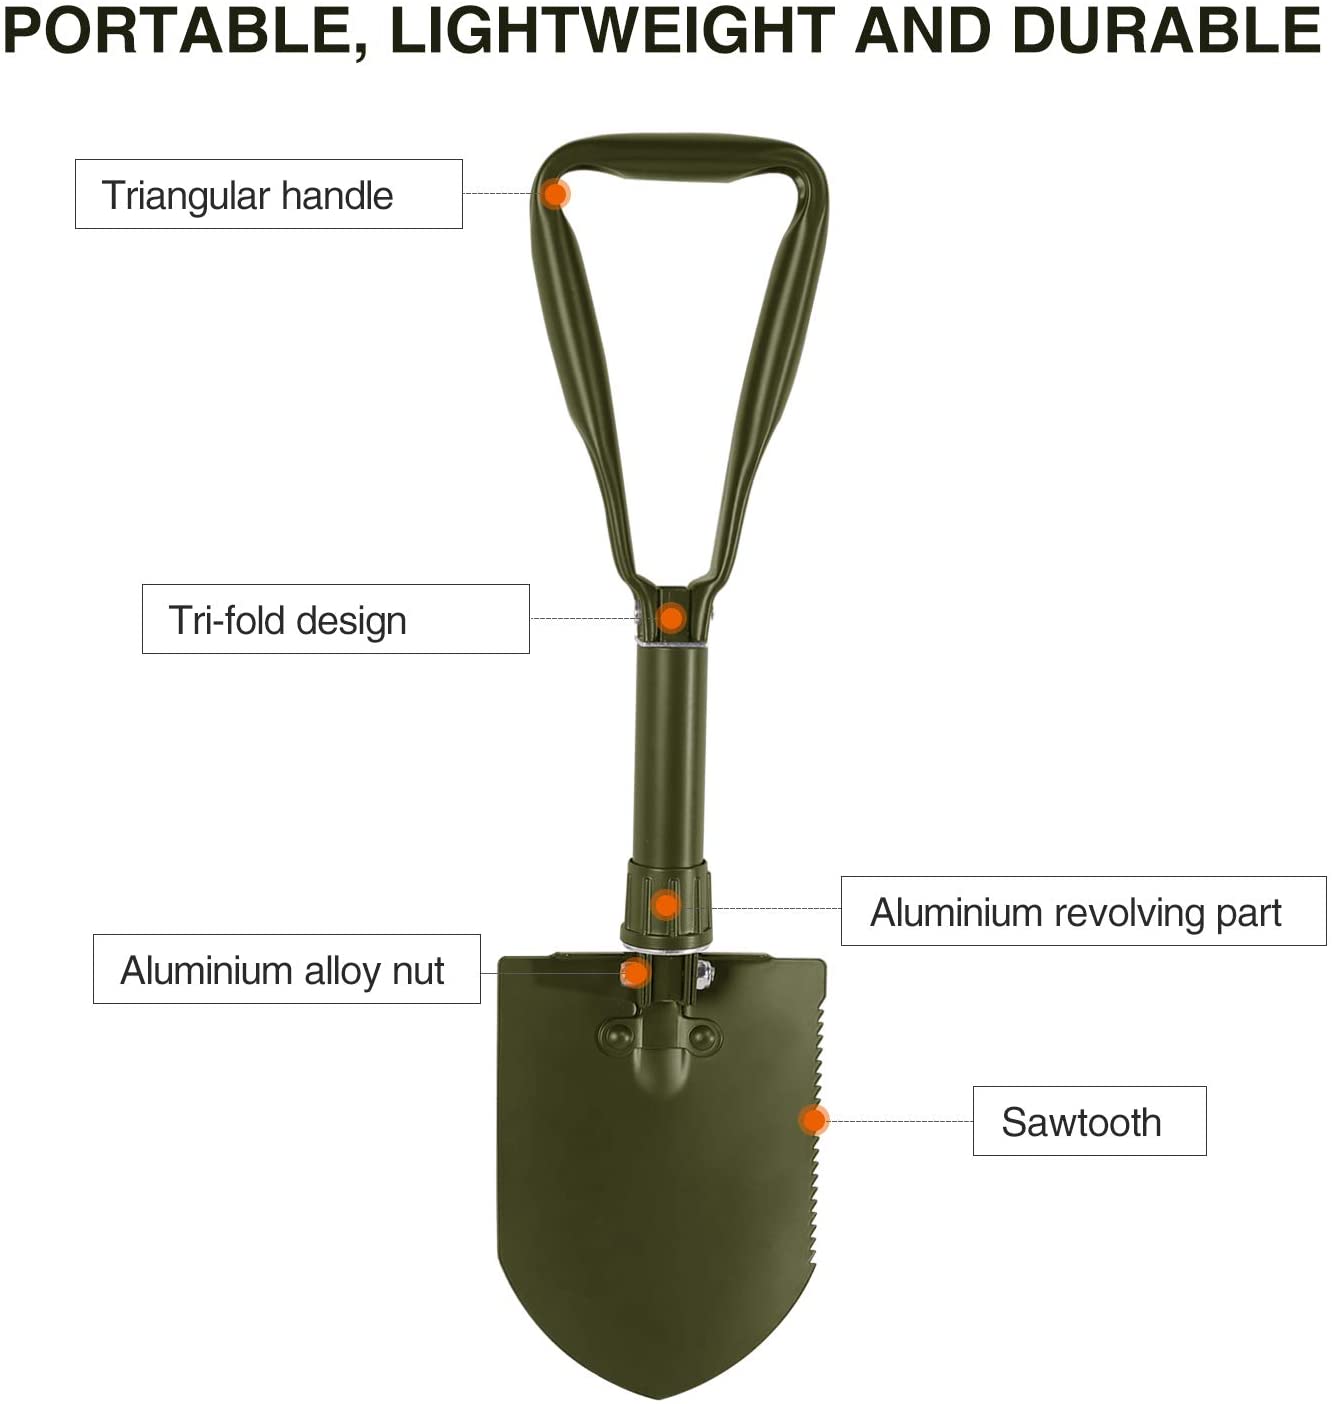 Military Folding Shovel with Sheath